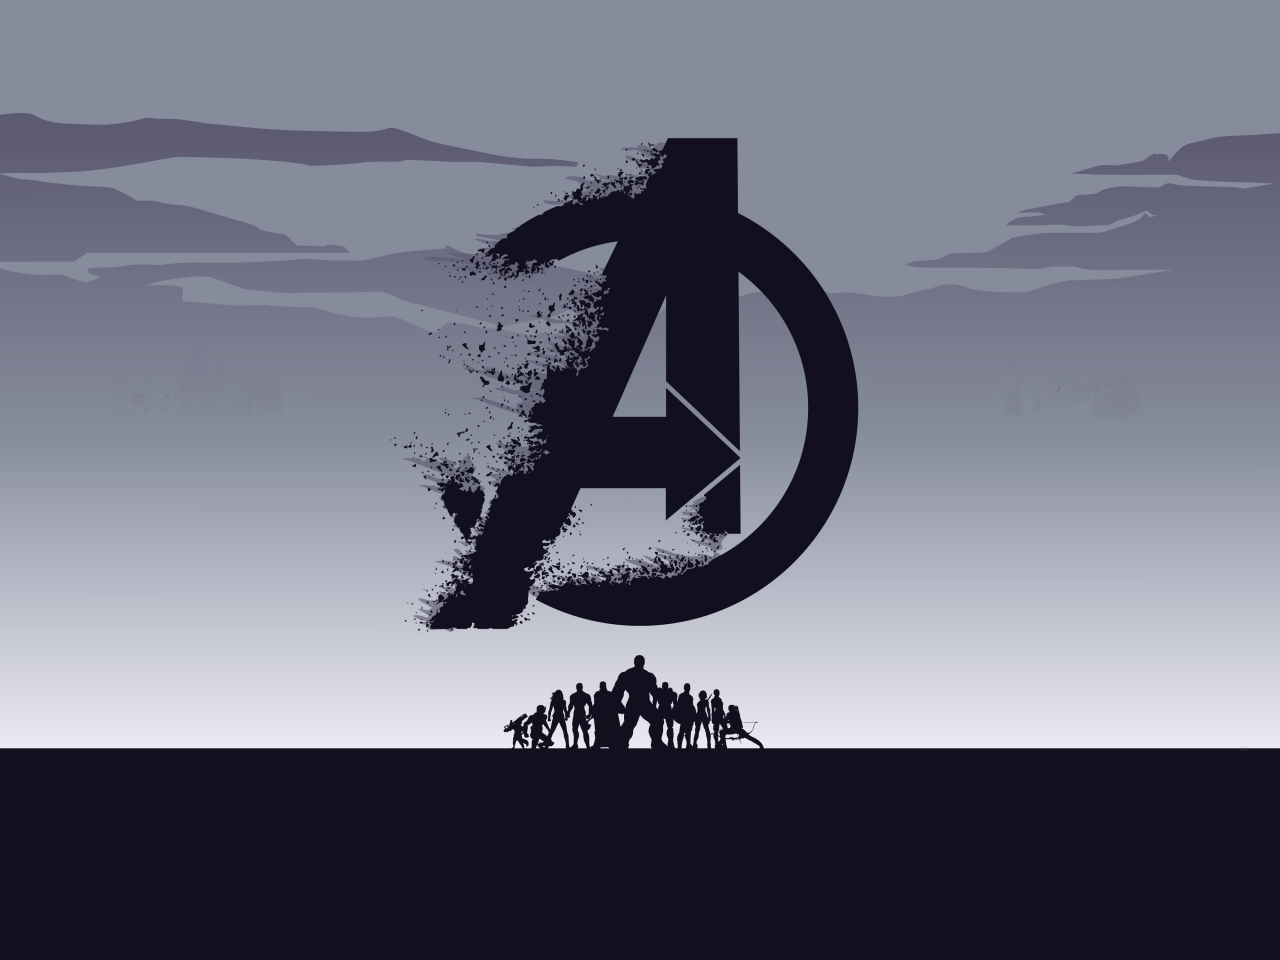 2019 movie, Avengers: Endgame, minimal, silhouette, art, 1280x960 wallpaper